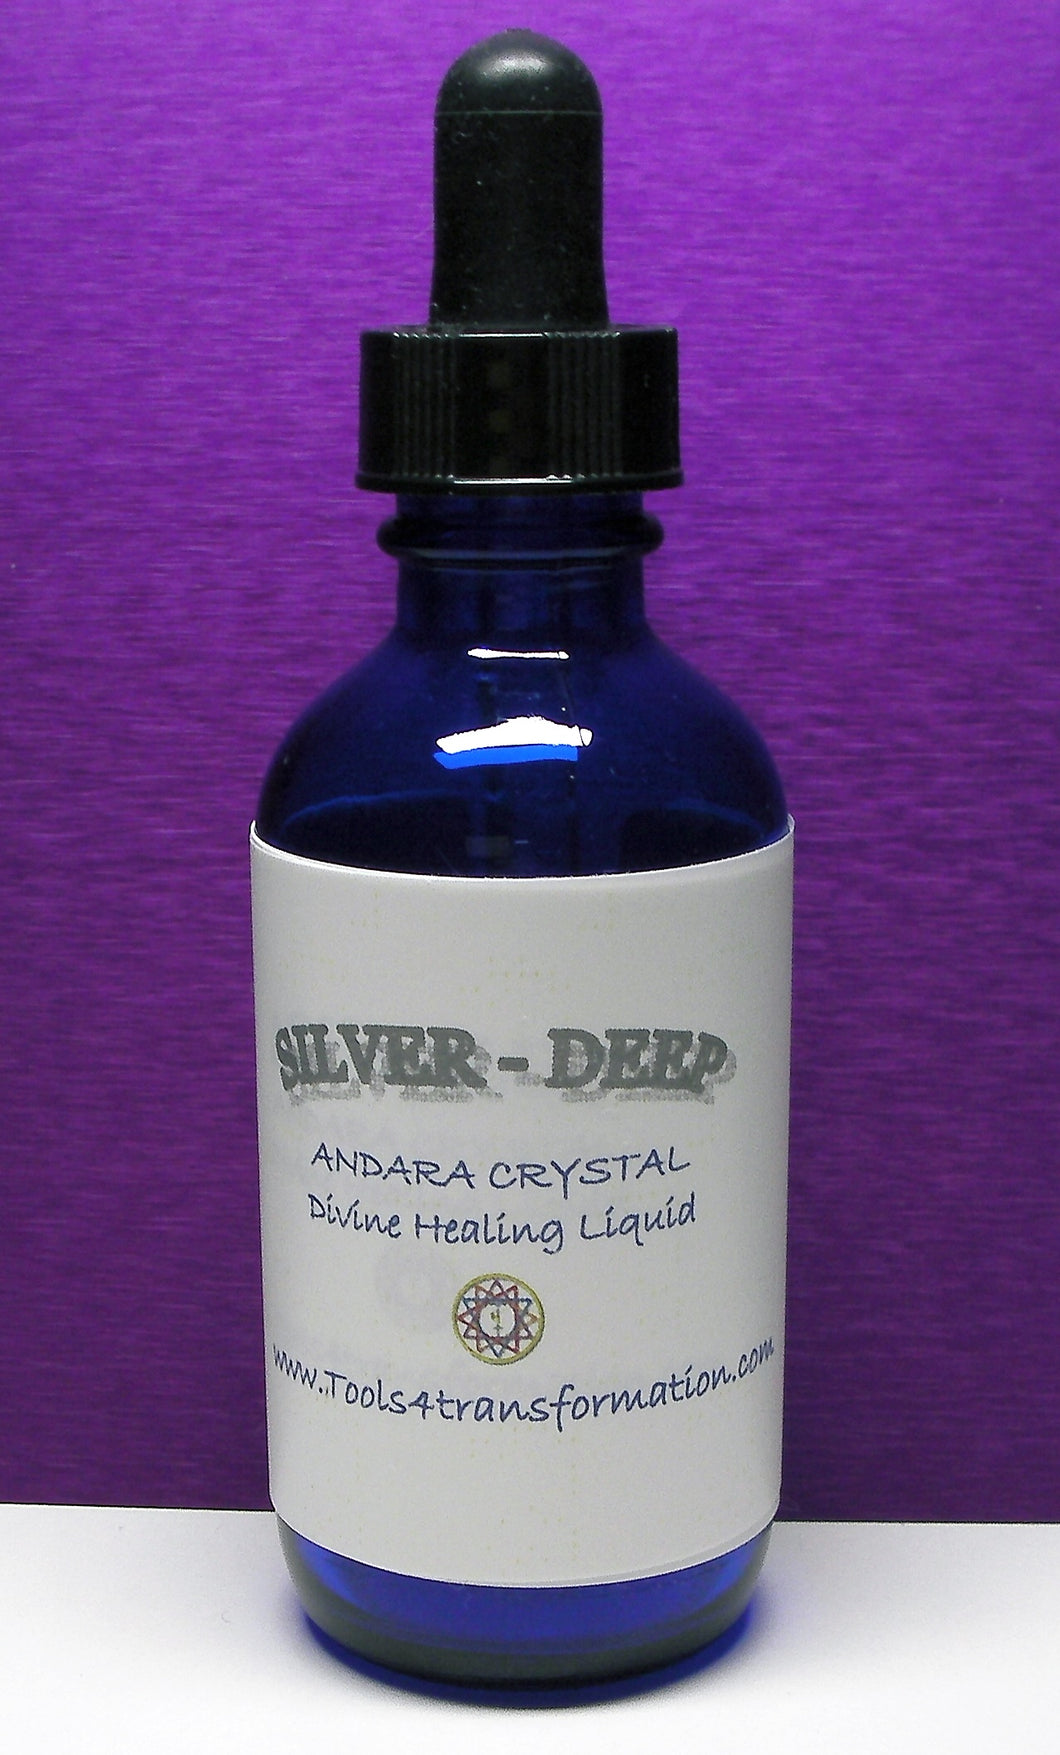 Silver - Deep Andara Crystal Liquid